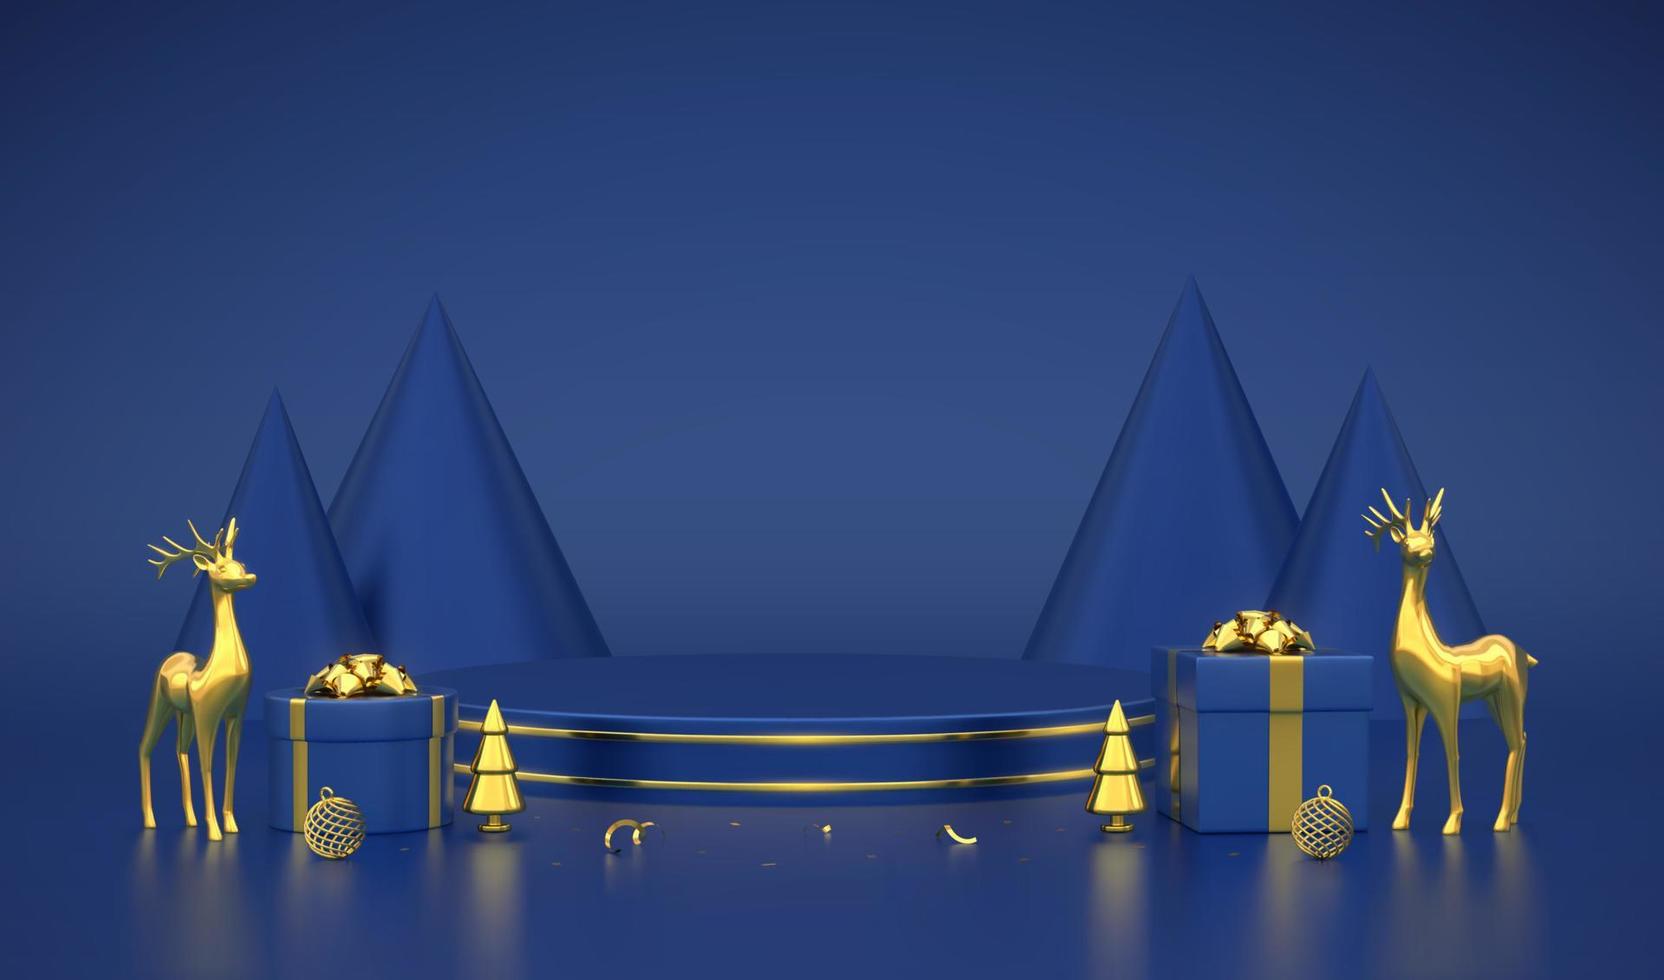 podio redondo azul. escena navideña y plataforma 3d sobre fondo azul. pedestal en blanco con cajas de regalo, ciervos dorados, bolas brillantes, pino metálico dorado, abetos en forma de cono. ilustración vectorial. vector